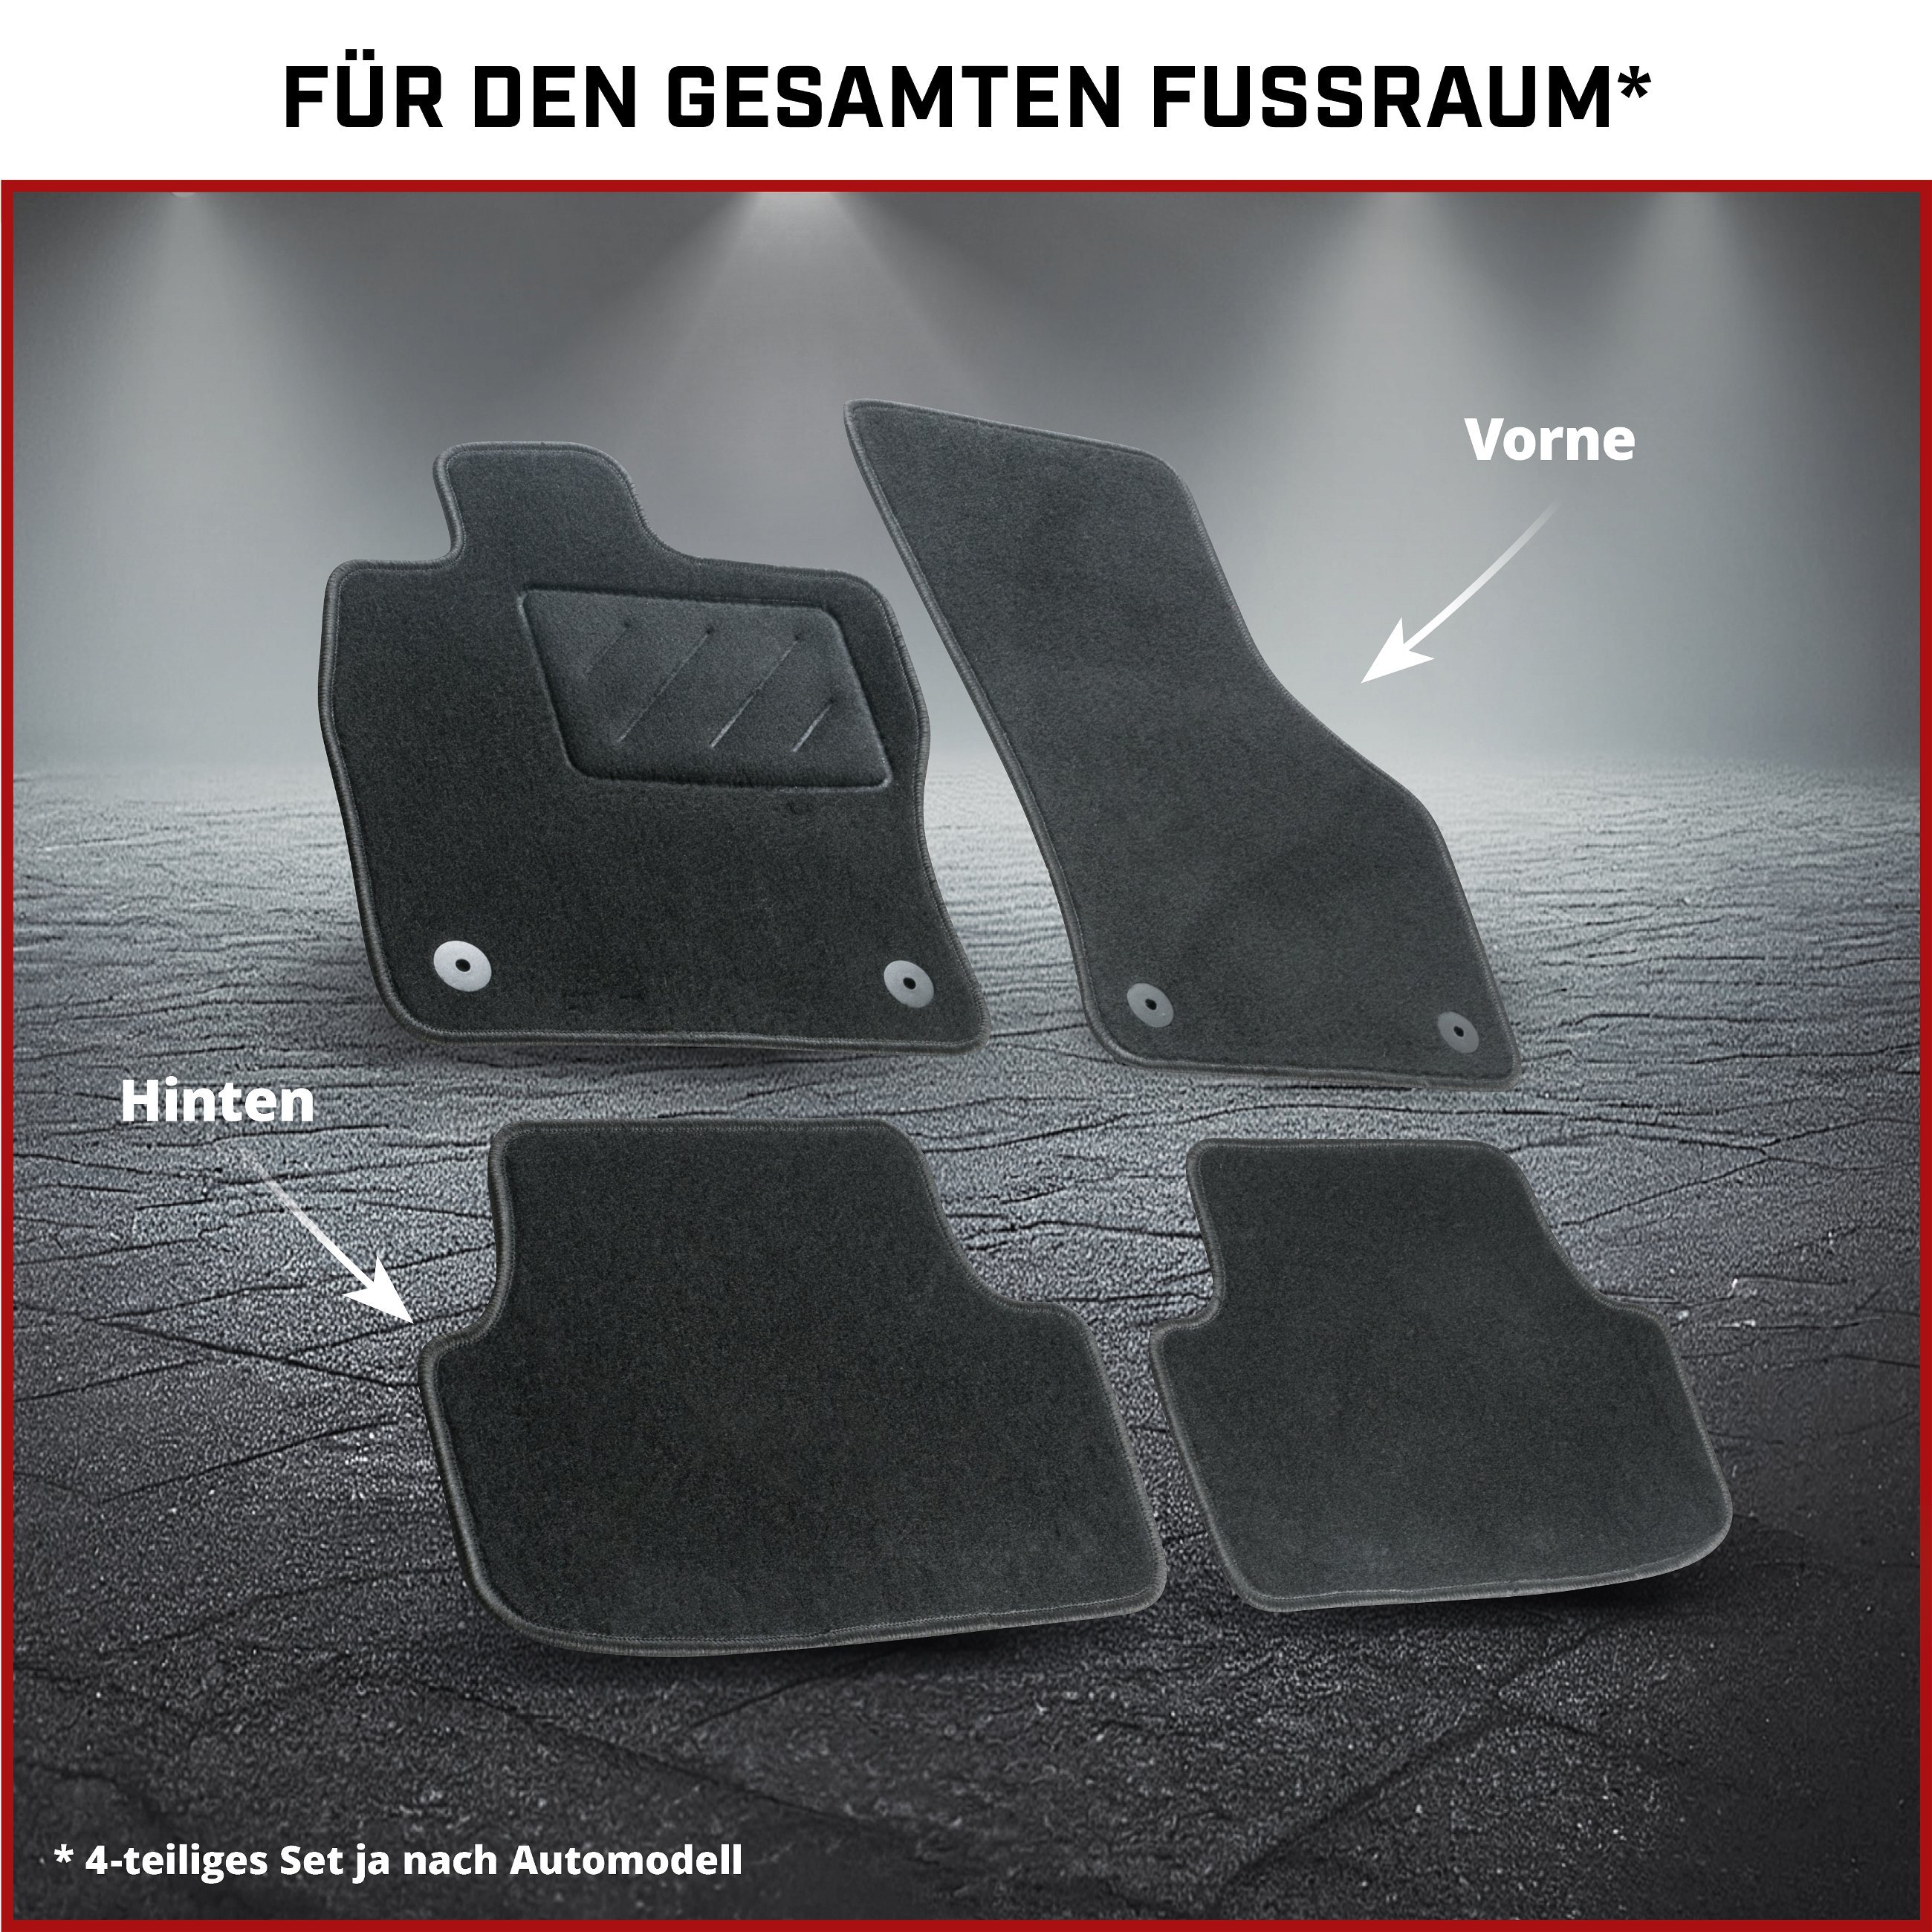 Fußmatten für BMW 5 (F10), BMW 5 Touring (F11) Facelift 2013 - 02/2017, Heckantrieb